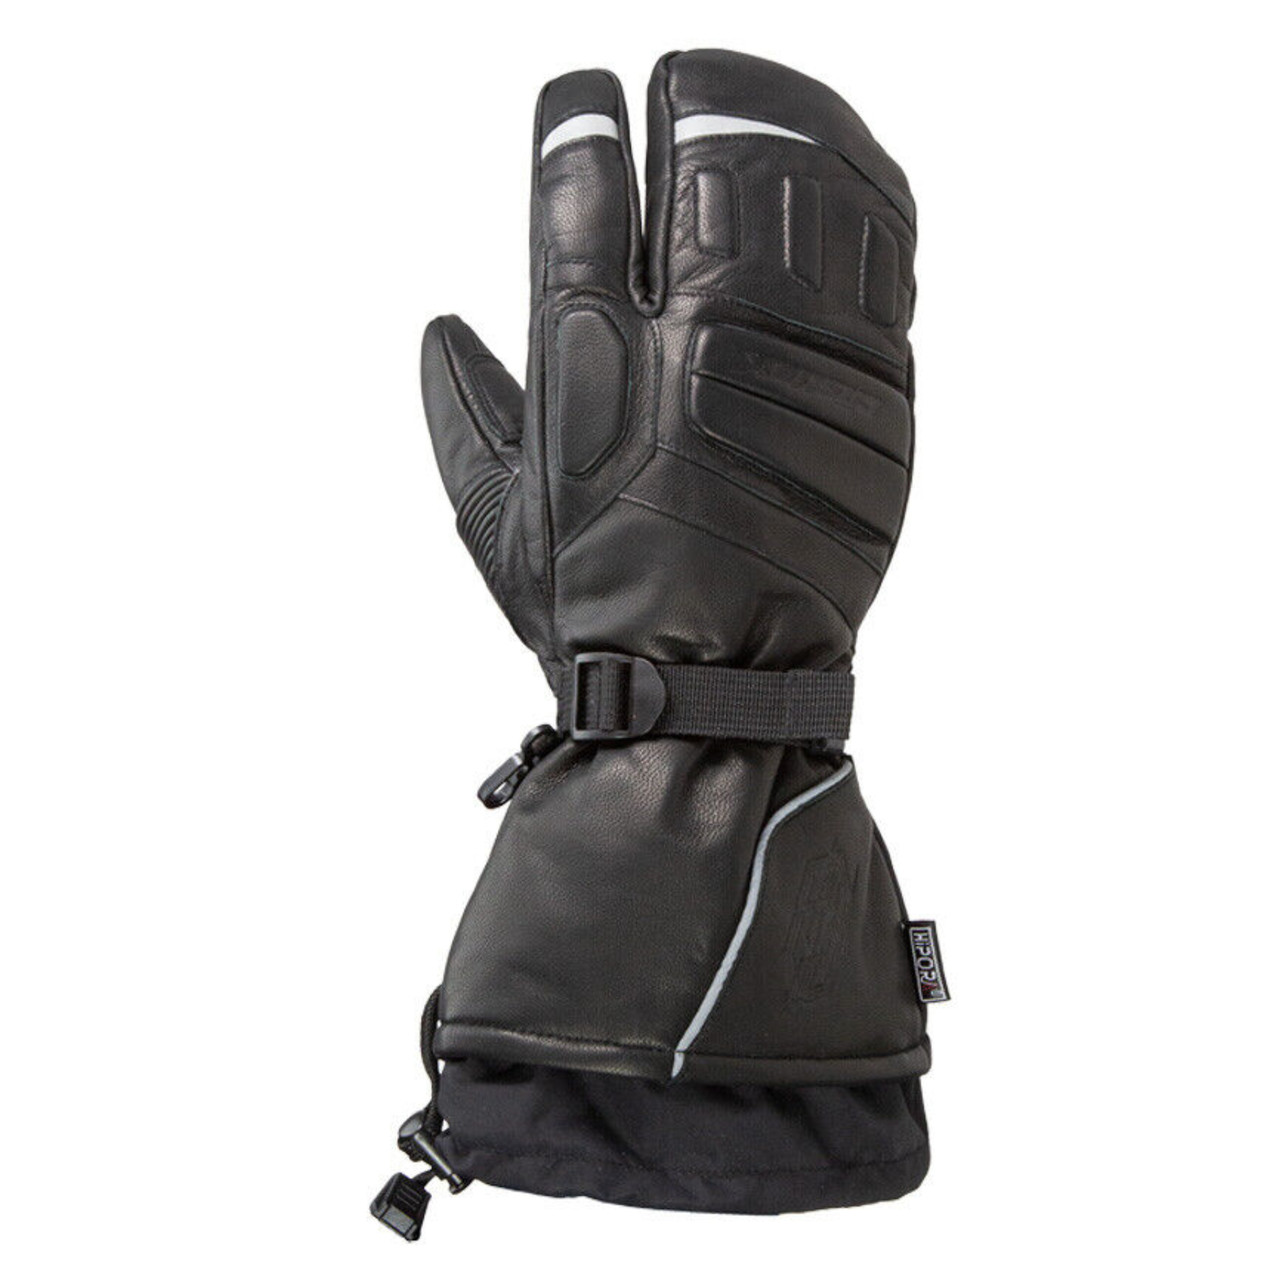 Castle X New Women's Large Black 3 Finger TRS G2 Gloves, 74-5876